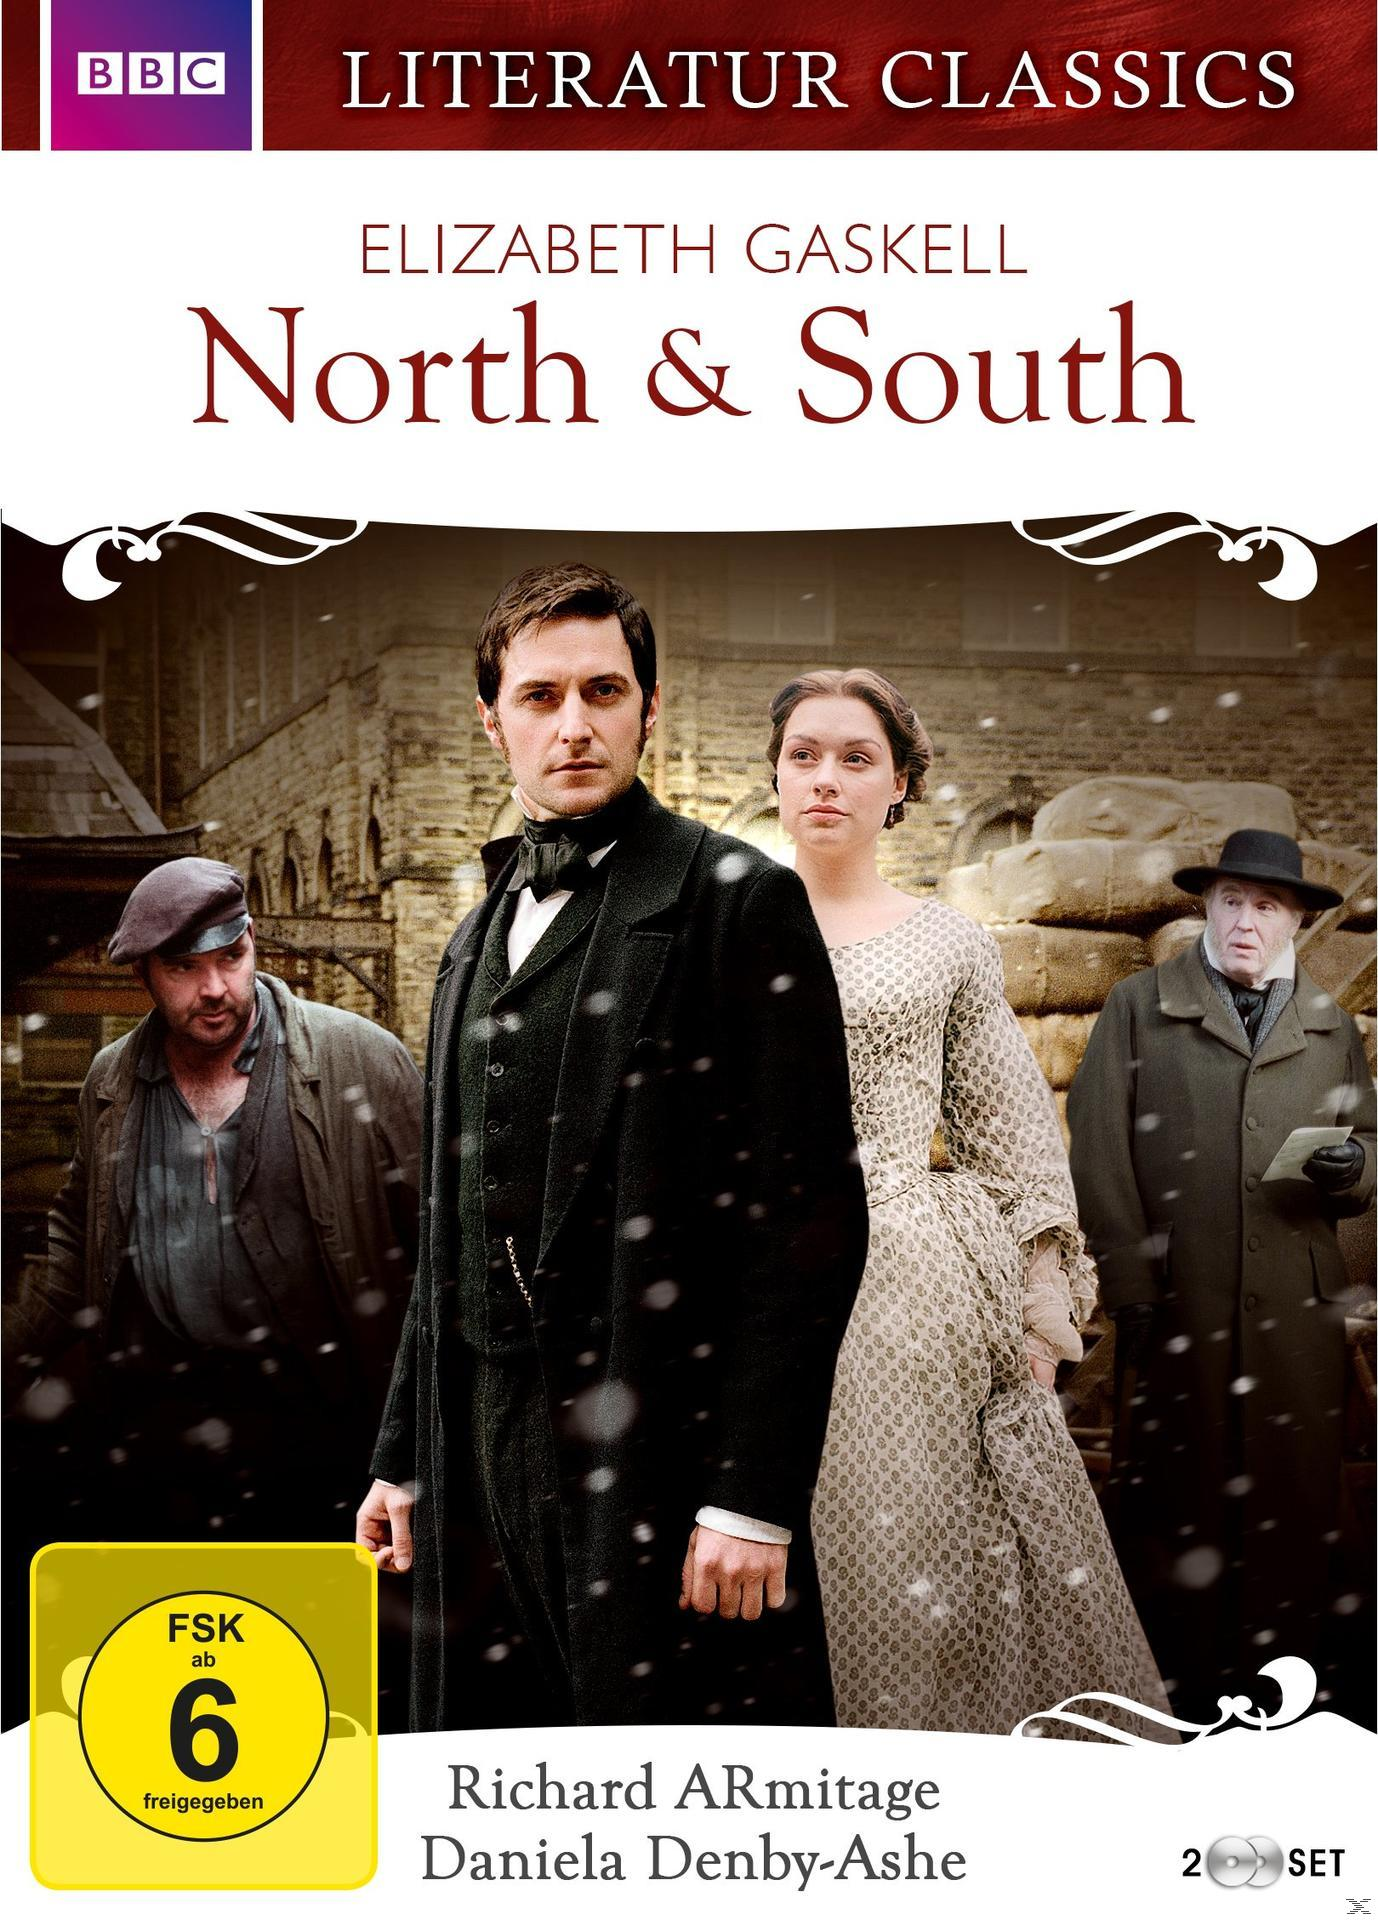 South Gaskell North DVD - & (2004) Elizabeth